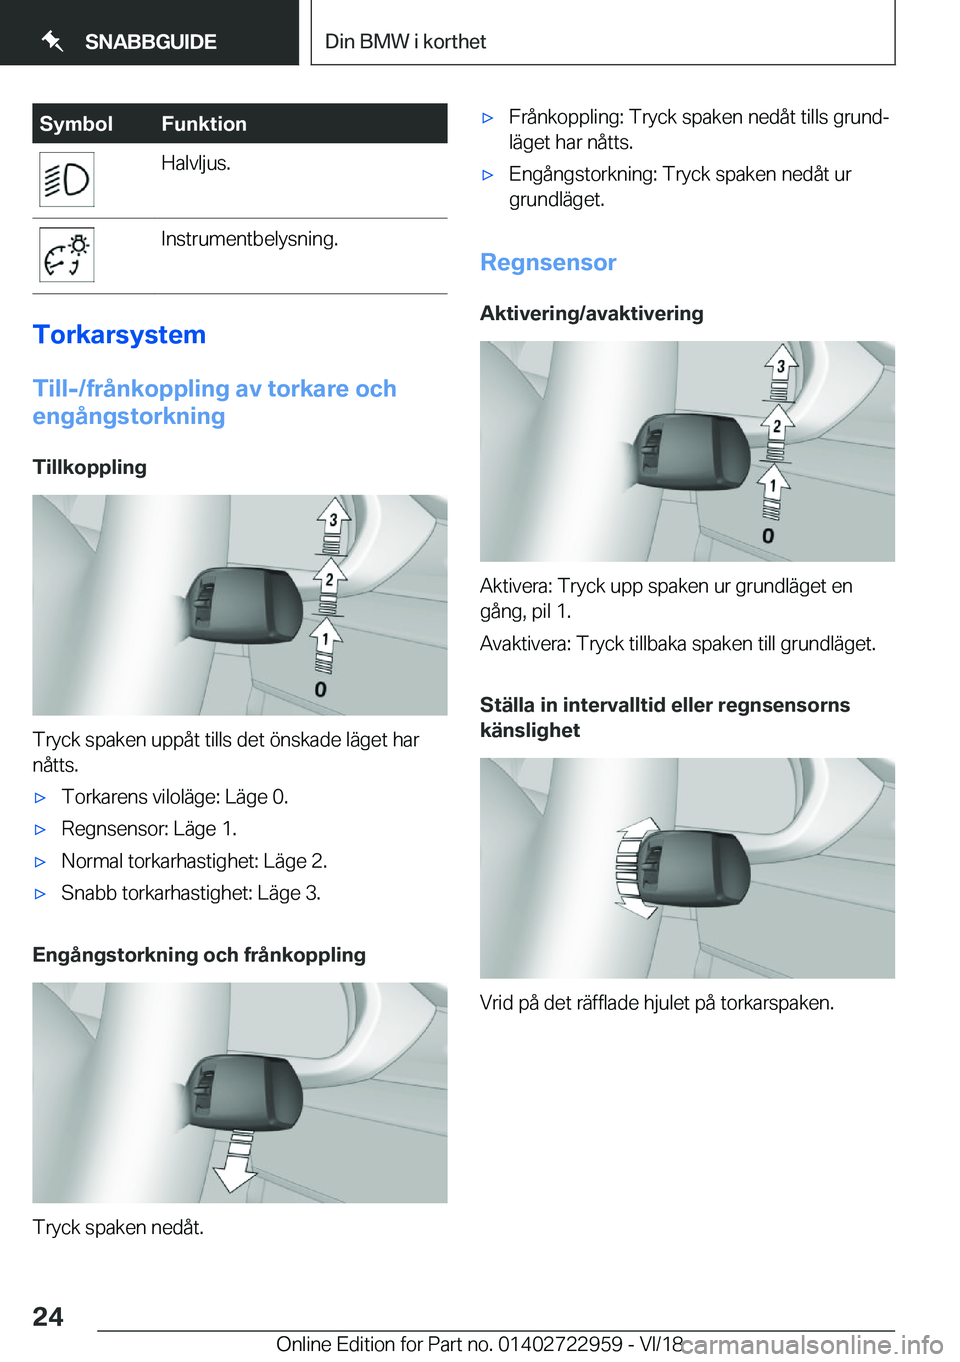 BMW M4 2019  InstruktionsbÖcker (in Swedish) �S�y�m�b�o�l�F�u�n�k�t�i�o�n�H�a�l�v�l�j�u�s�.�I�n�s�t�r�u�m�e�n�t�b�e�l�y�s�n�i�n�g�.
�T�o�r�k�a�r�s�y�s�t�e�m
�T�i�l�l�-�/�f�r�å�n�k�o�p�p�l�i�n�g��a�v��t�o�r�k�a�r�e��o�c�h
�e�n�g�å�n�g�s�t�o�